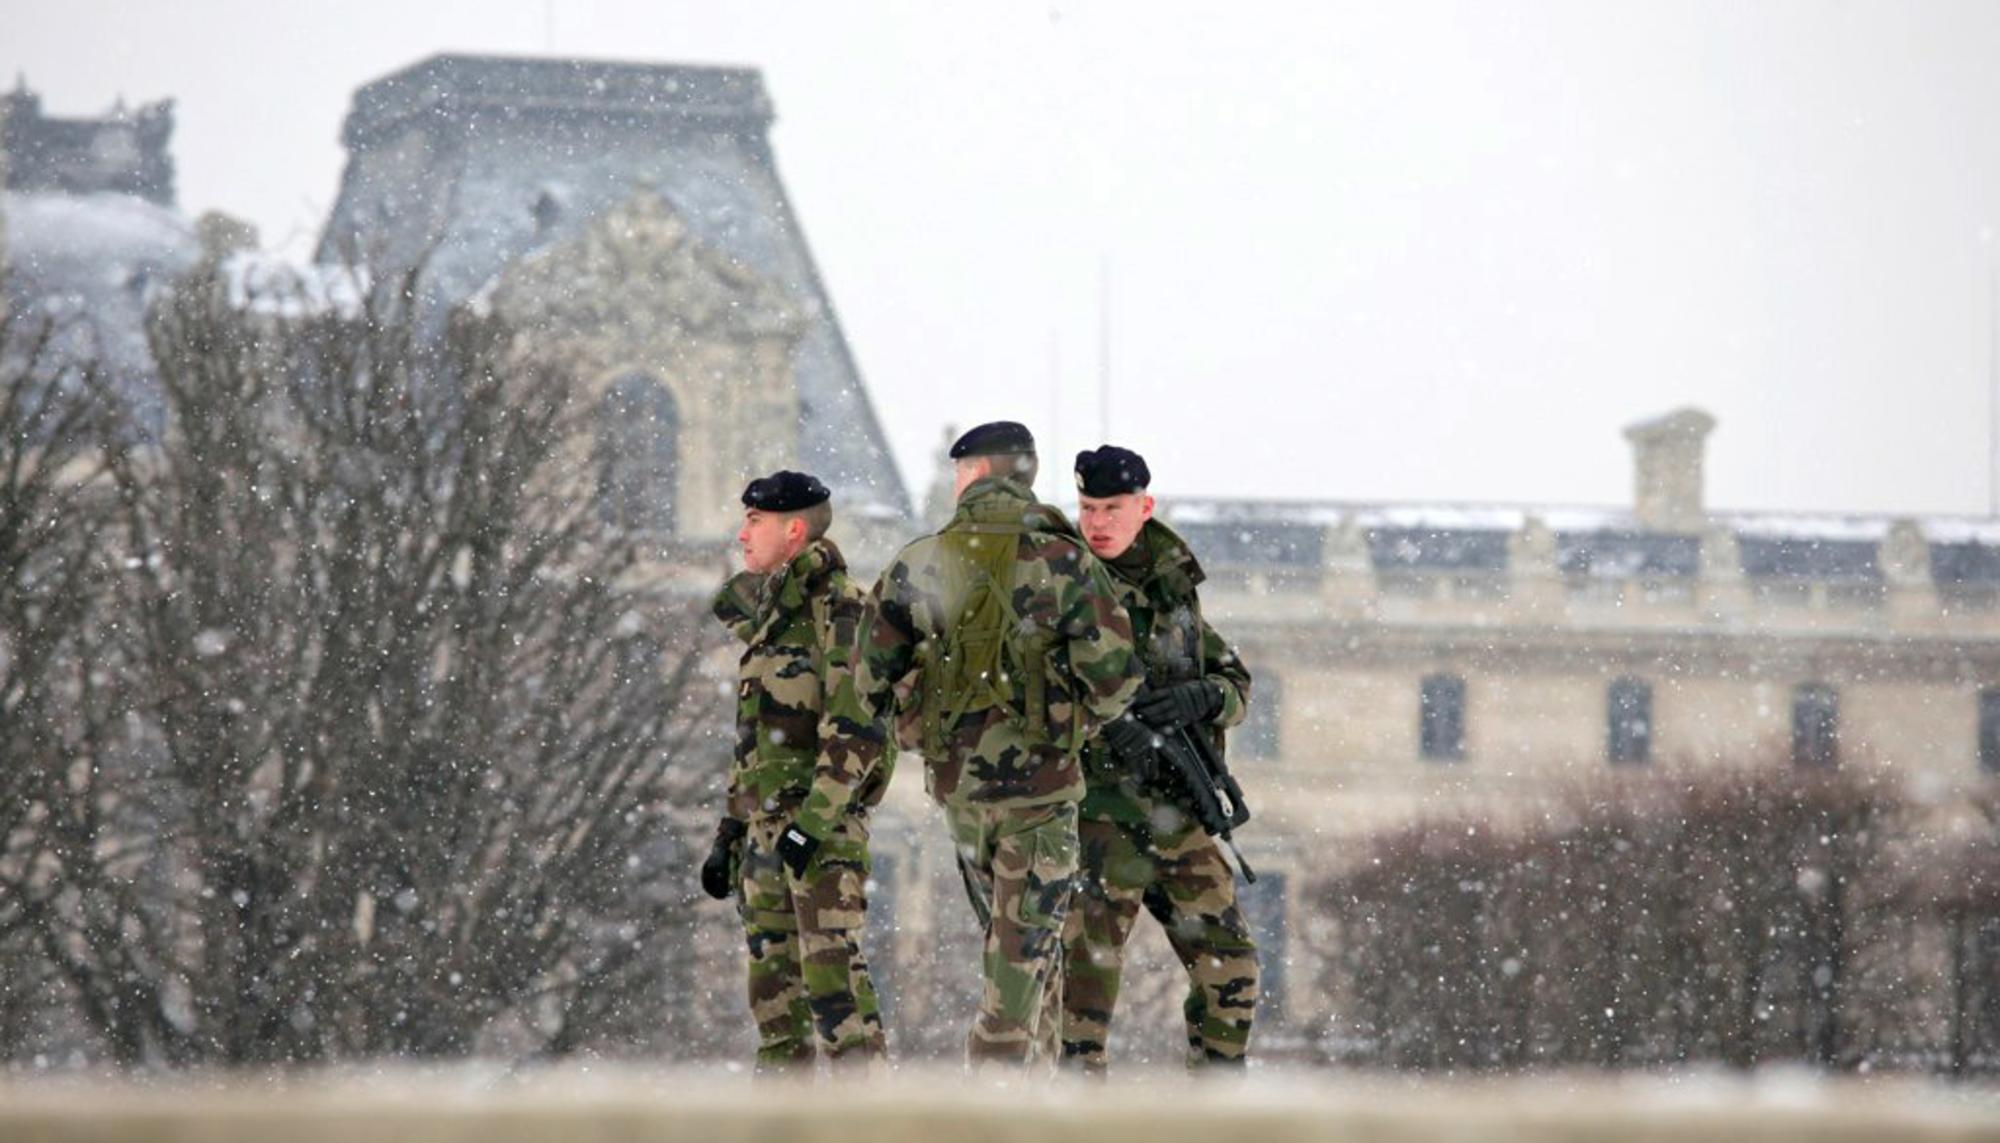 Tres soldados frente al Louvre, París